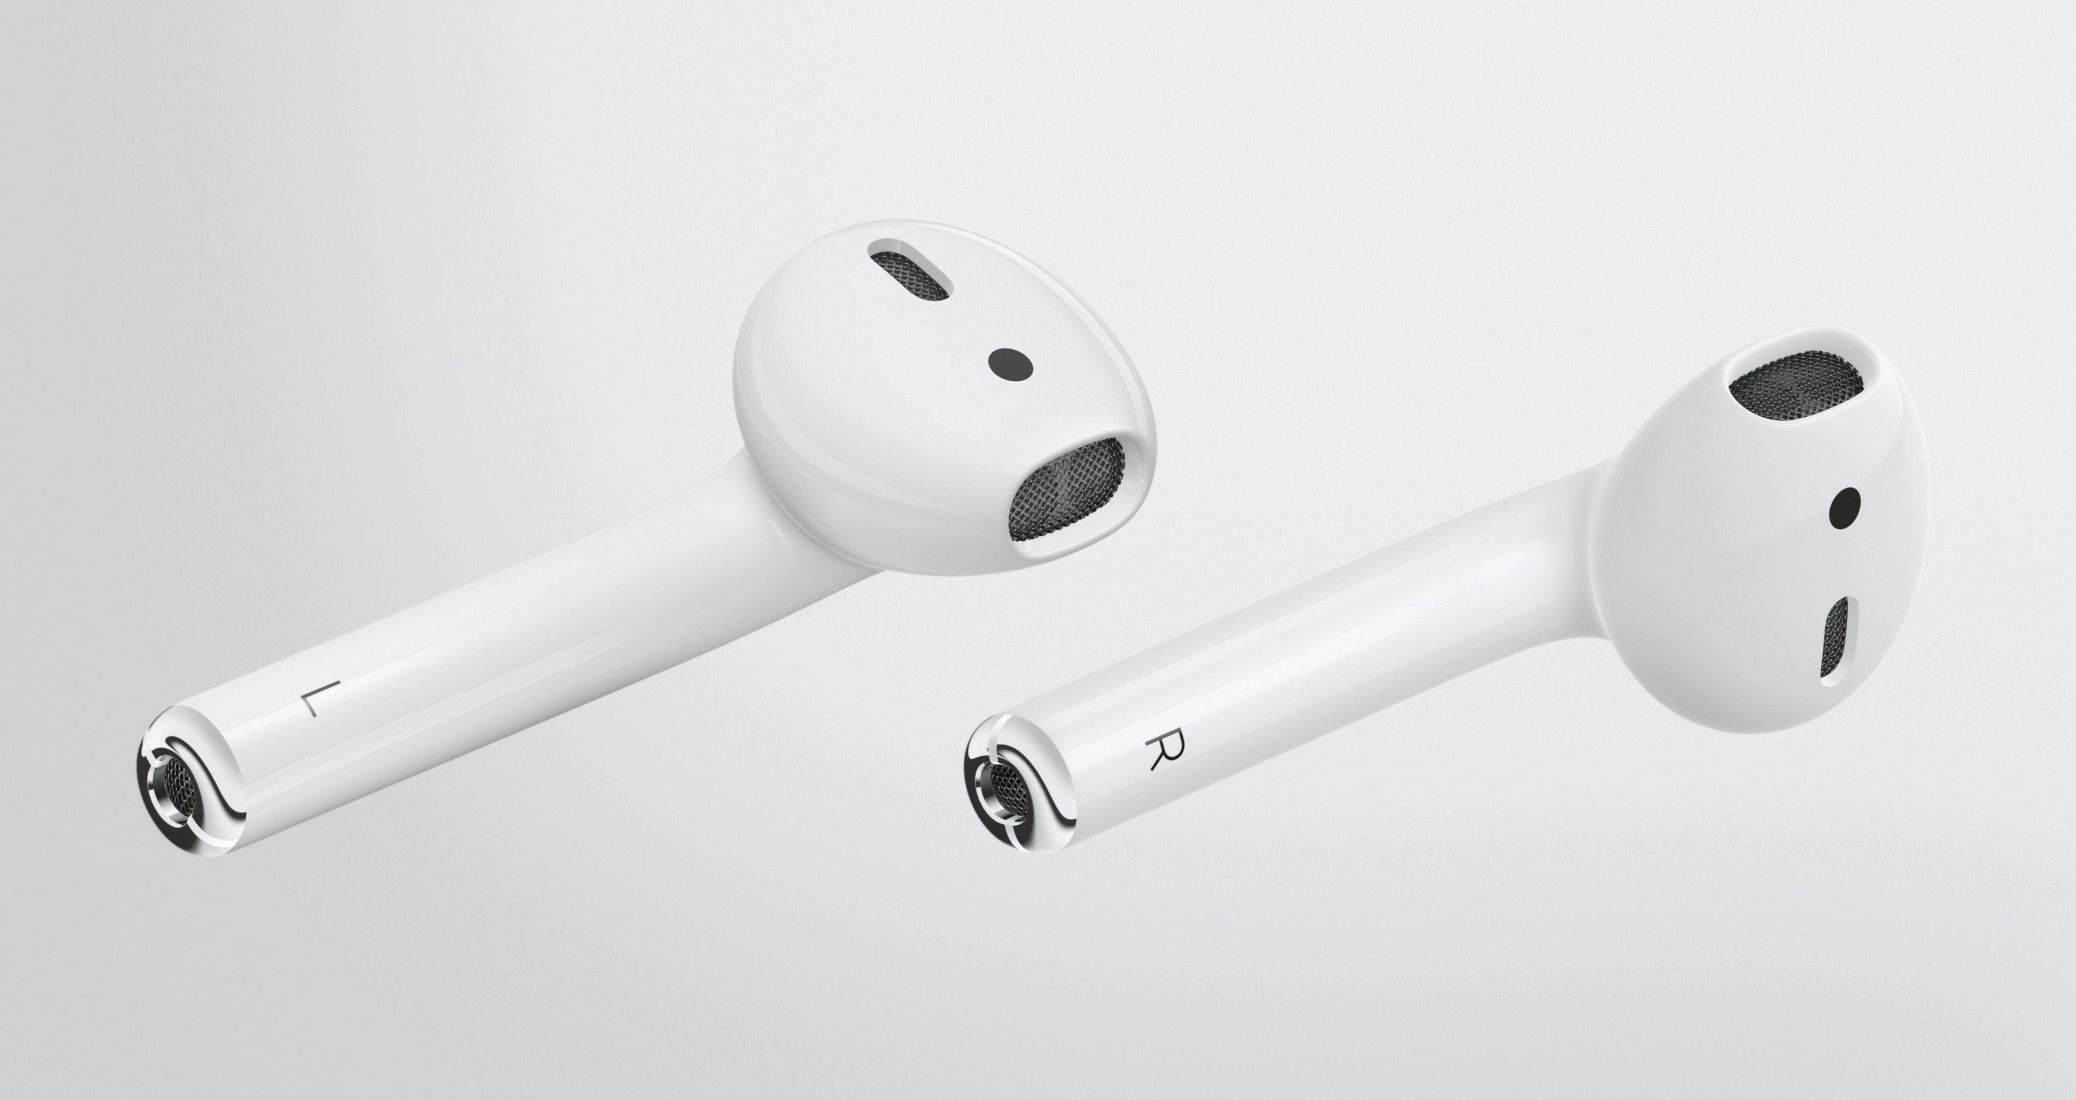 Appleのワイヤレスイヤホン「AirPods」の販売がついにスタート、すでに出荷は4週間待ちの状態 - GIGAZINE